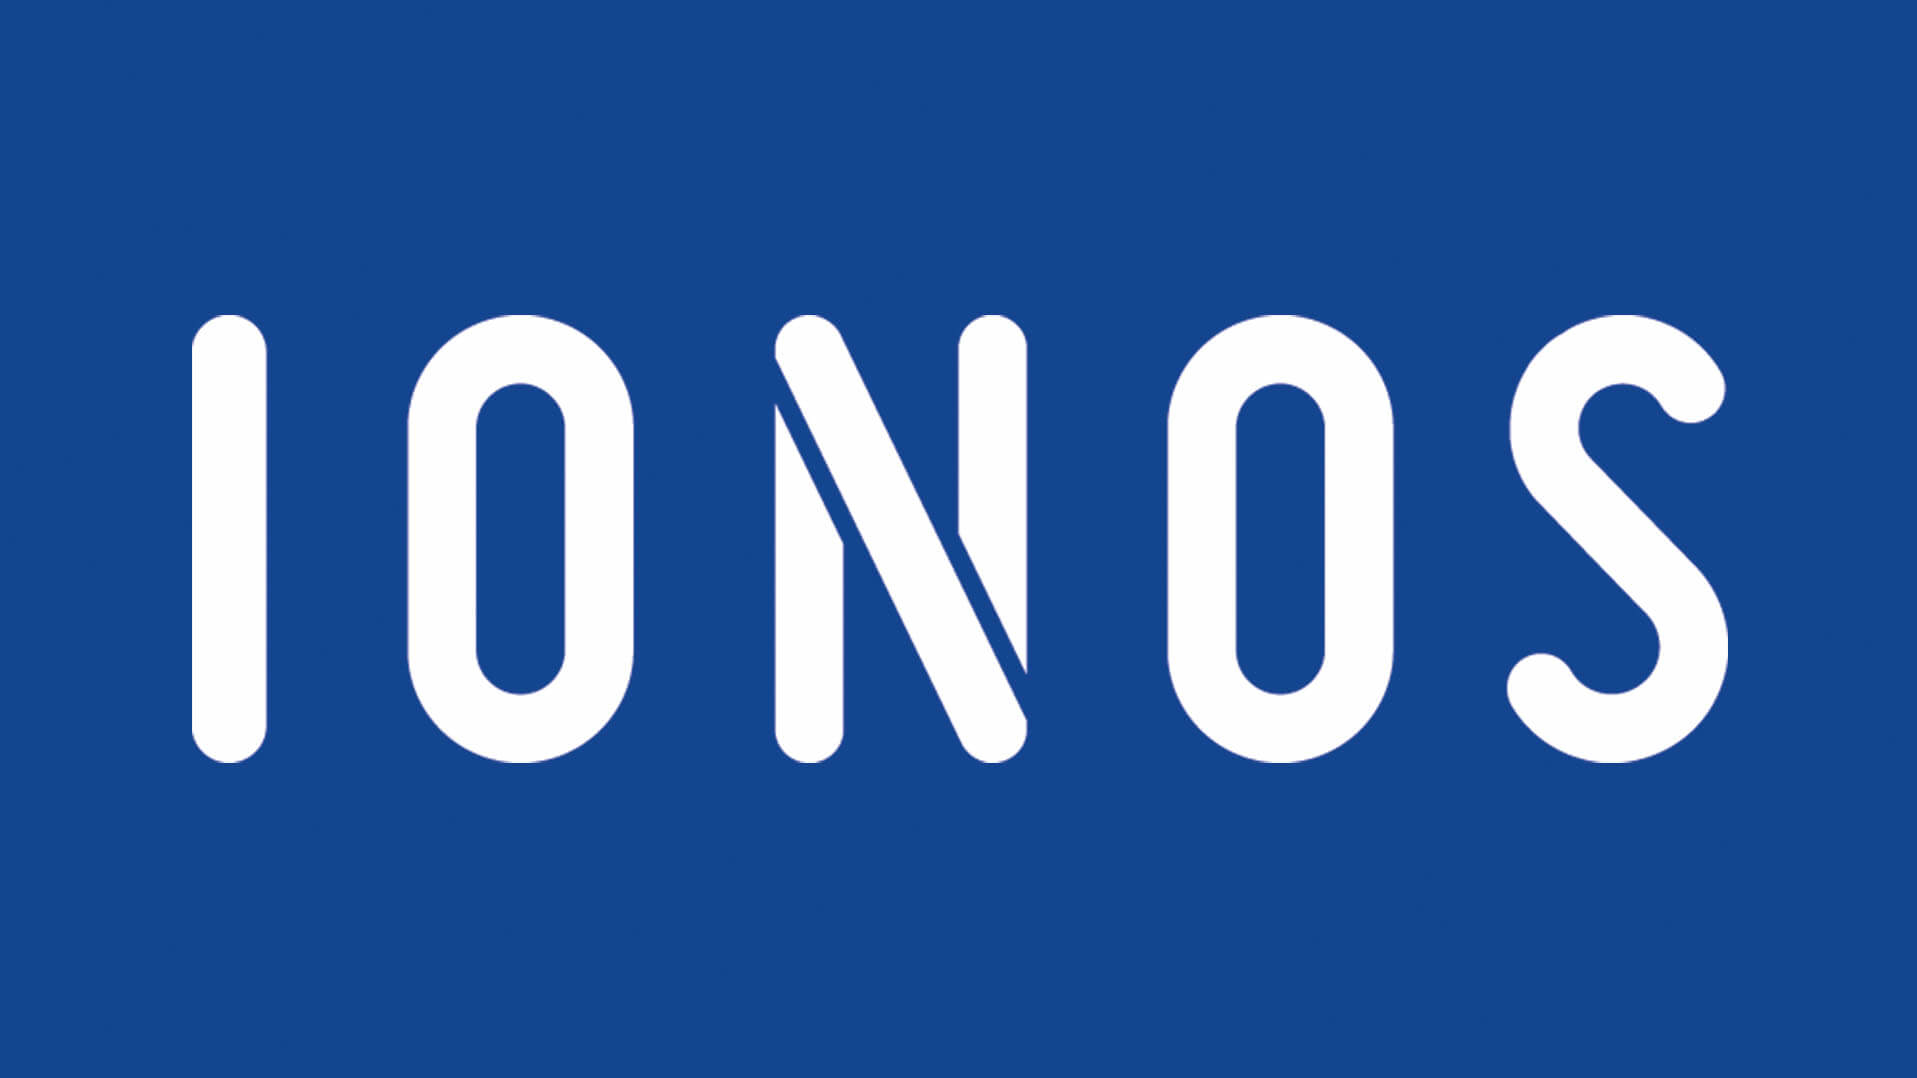 IONOS logo on blue background